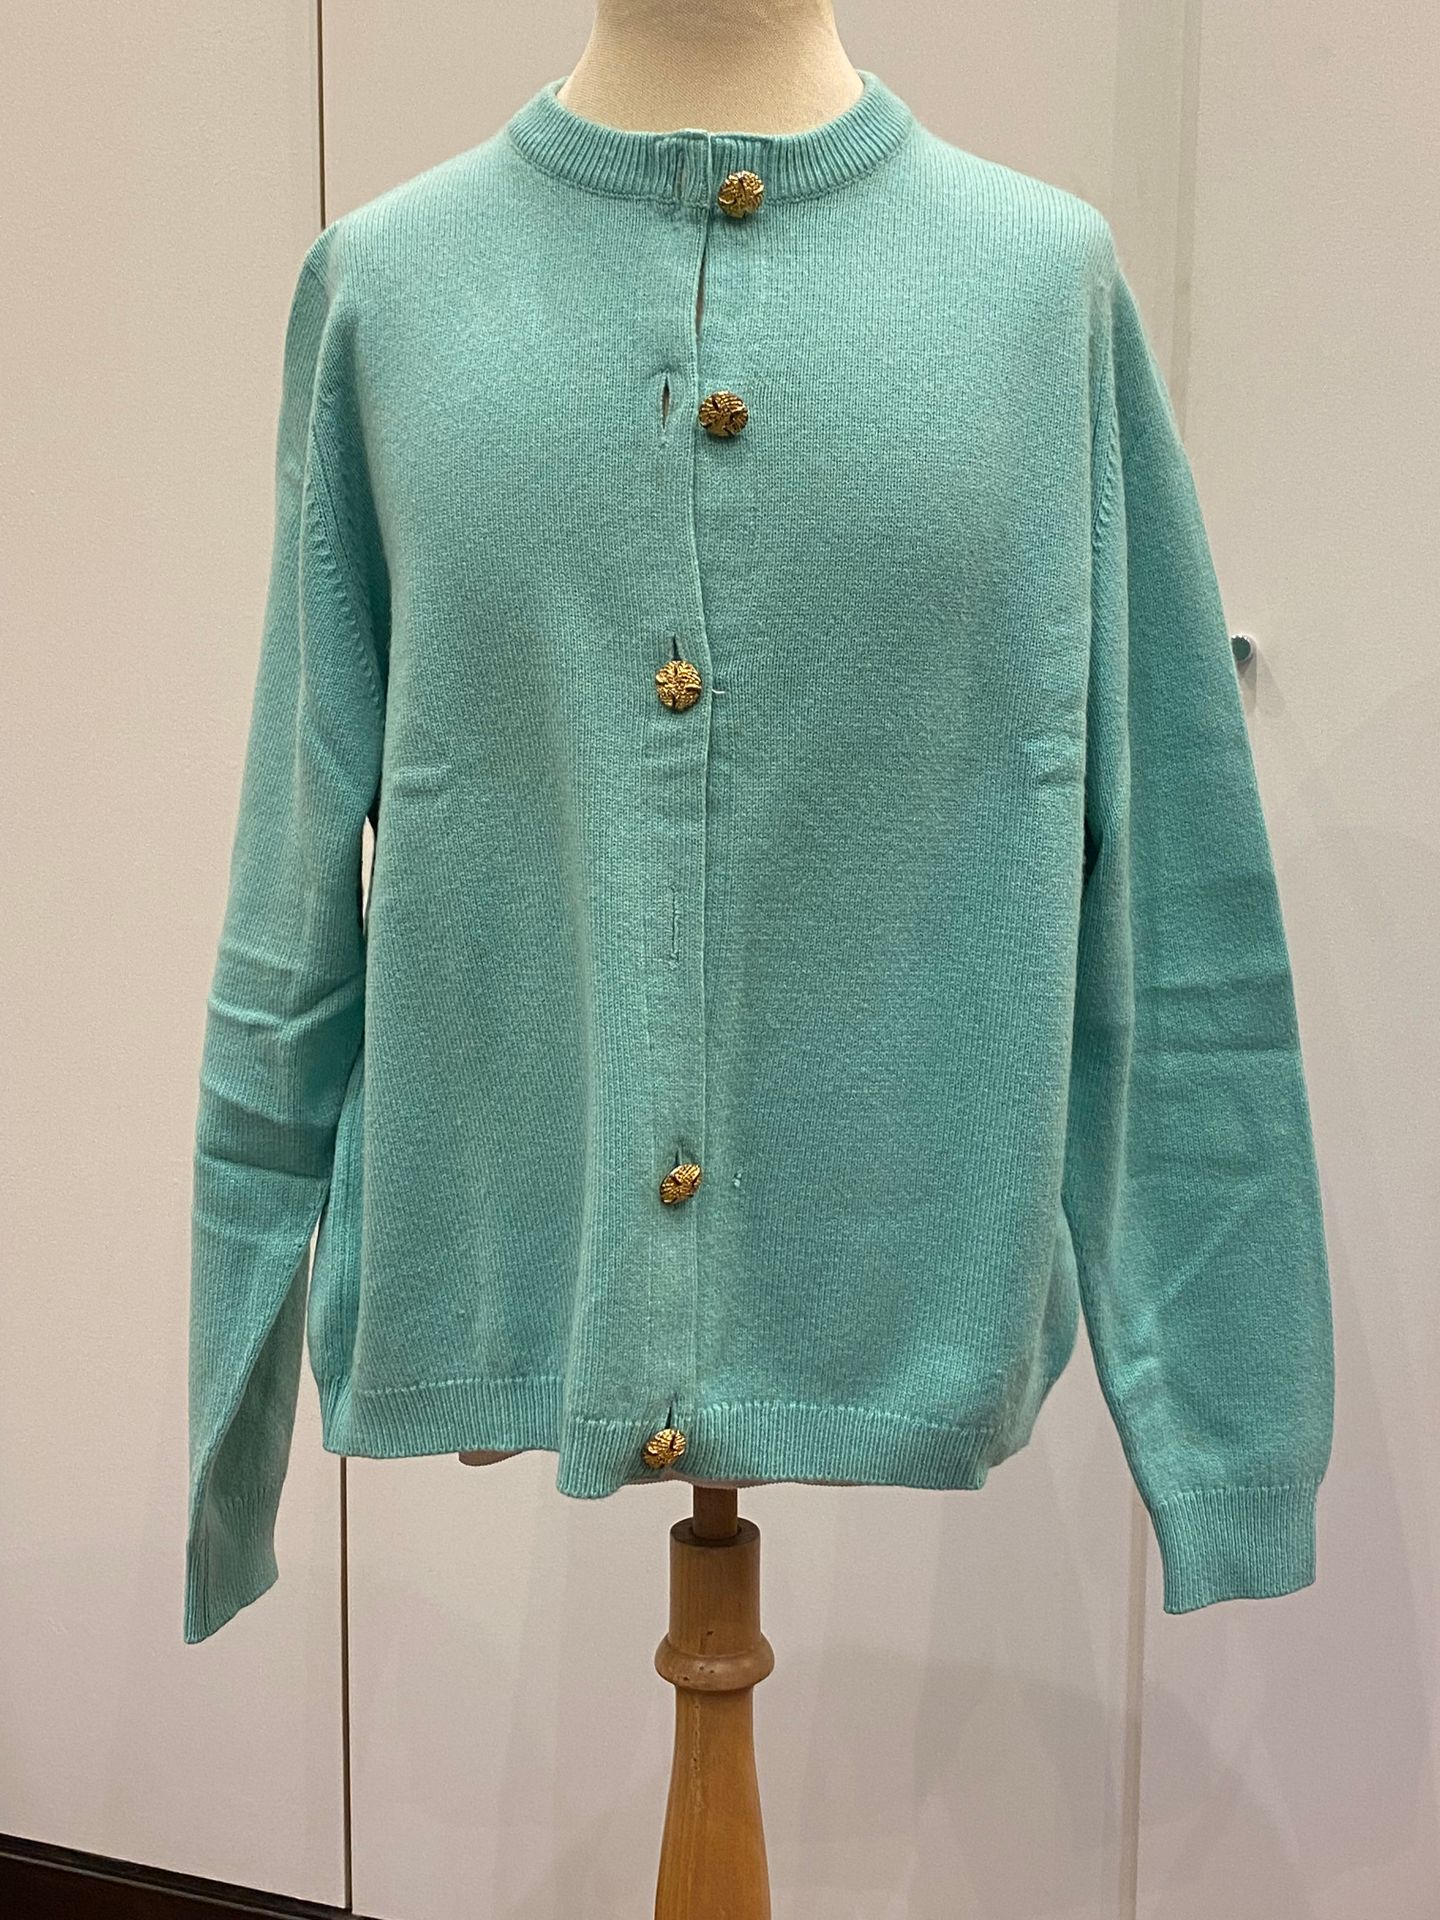 Null BALLANTYNE，两件羊绒衫，一件绿松石色，一件绿色，尺寸为44号（绿松石色羊绒衫上的一个纽扣丢失）。